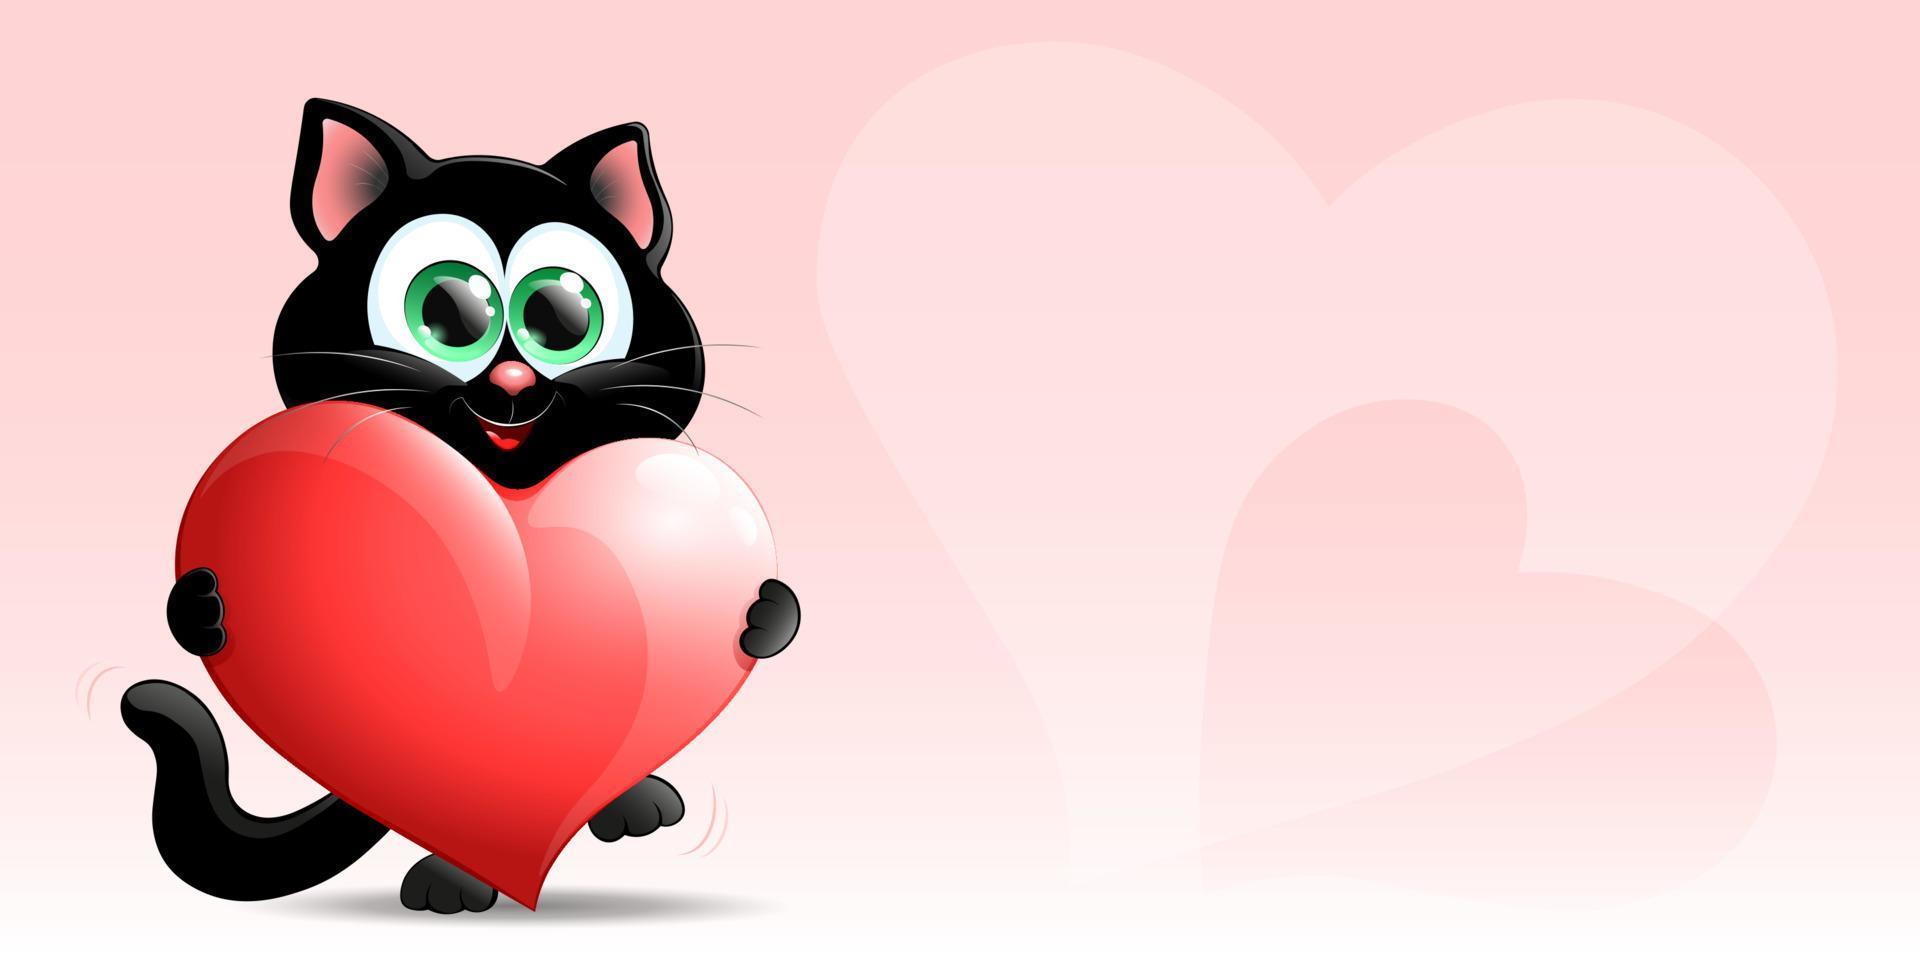 zwarte kat met groot hart vector